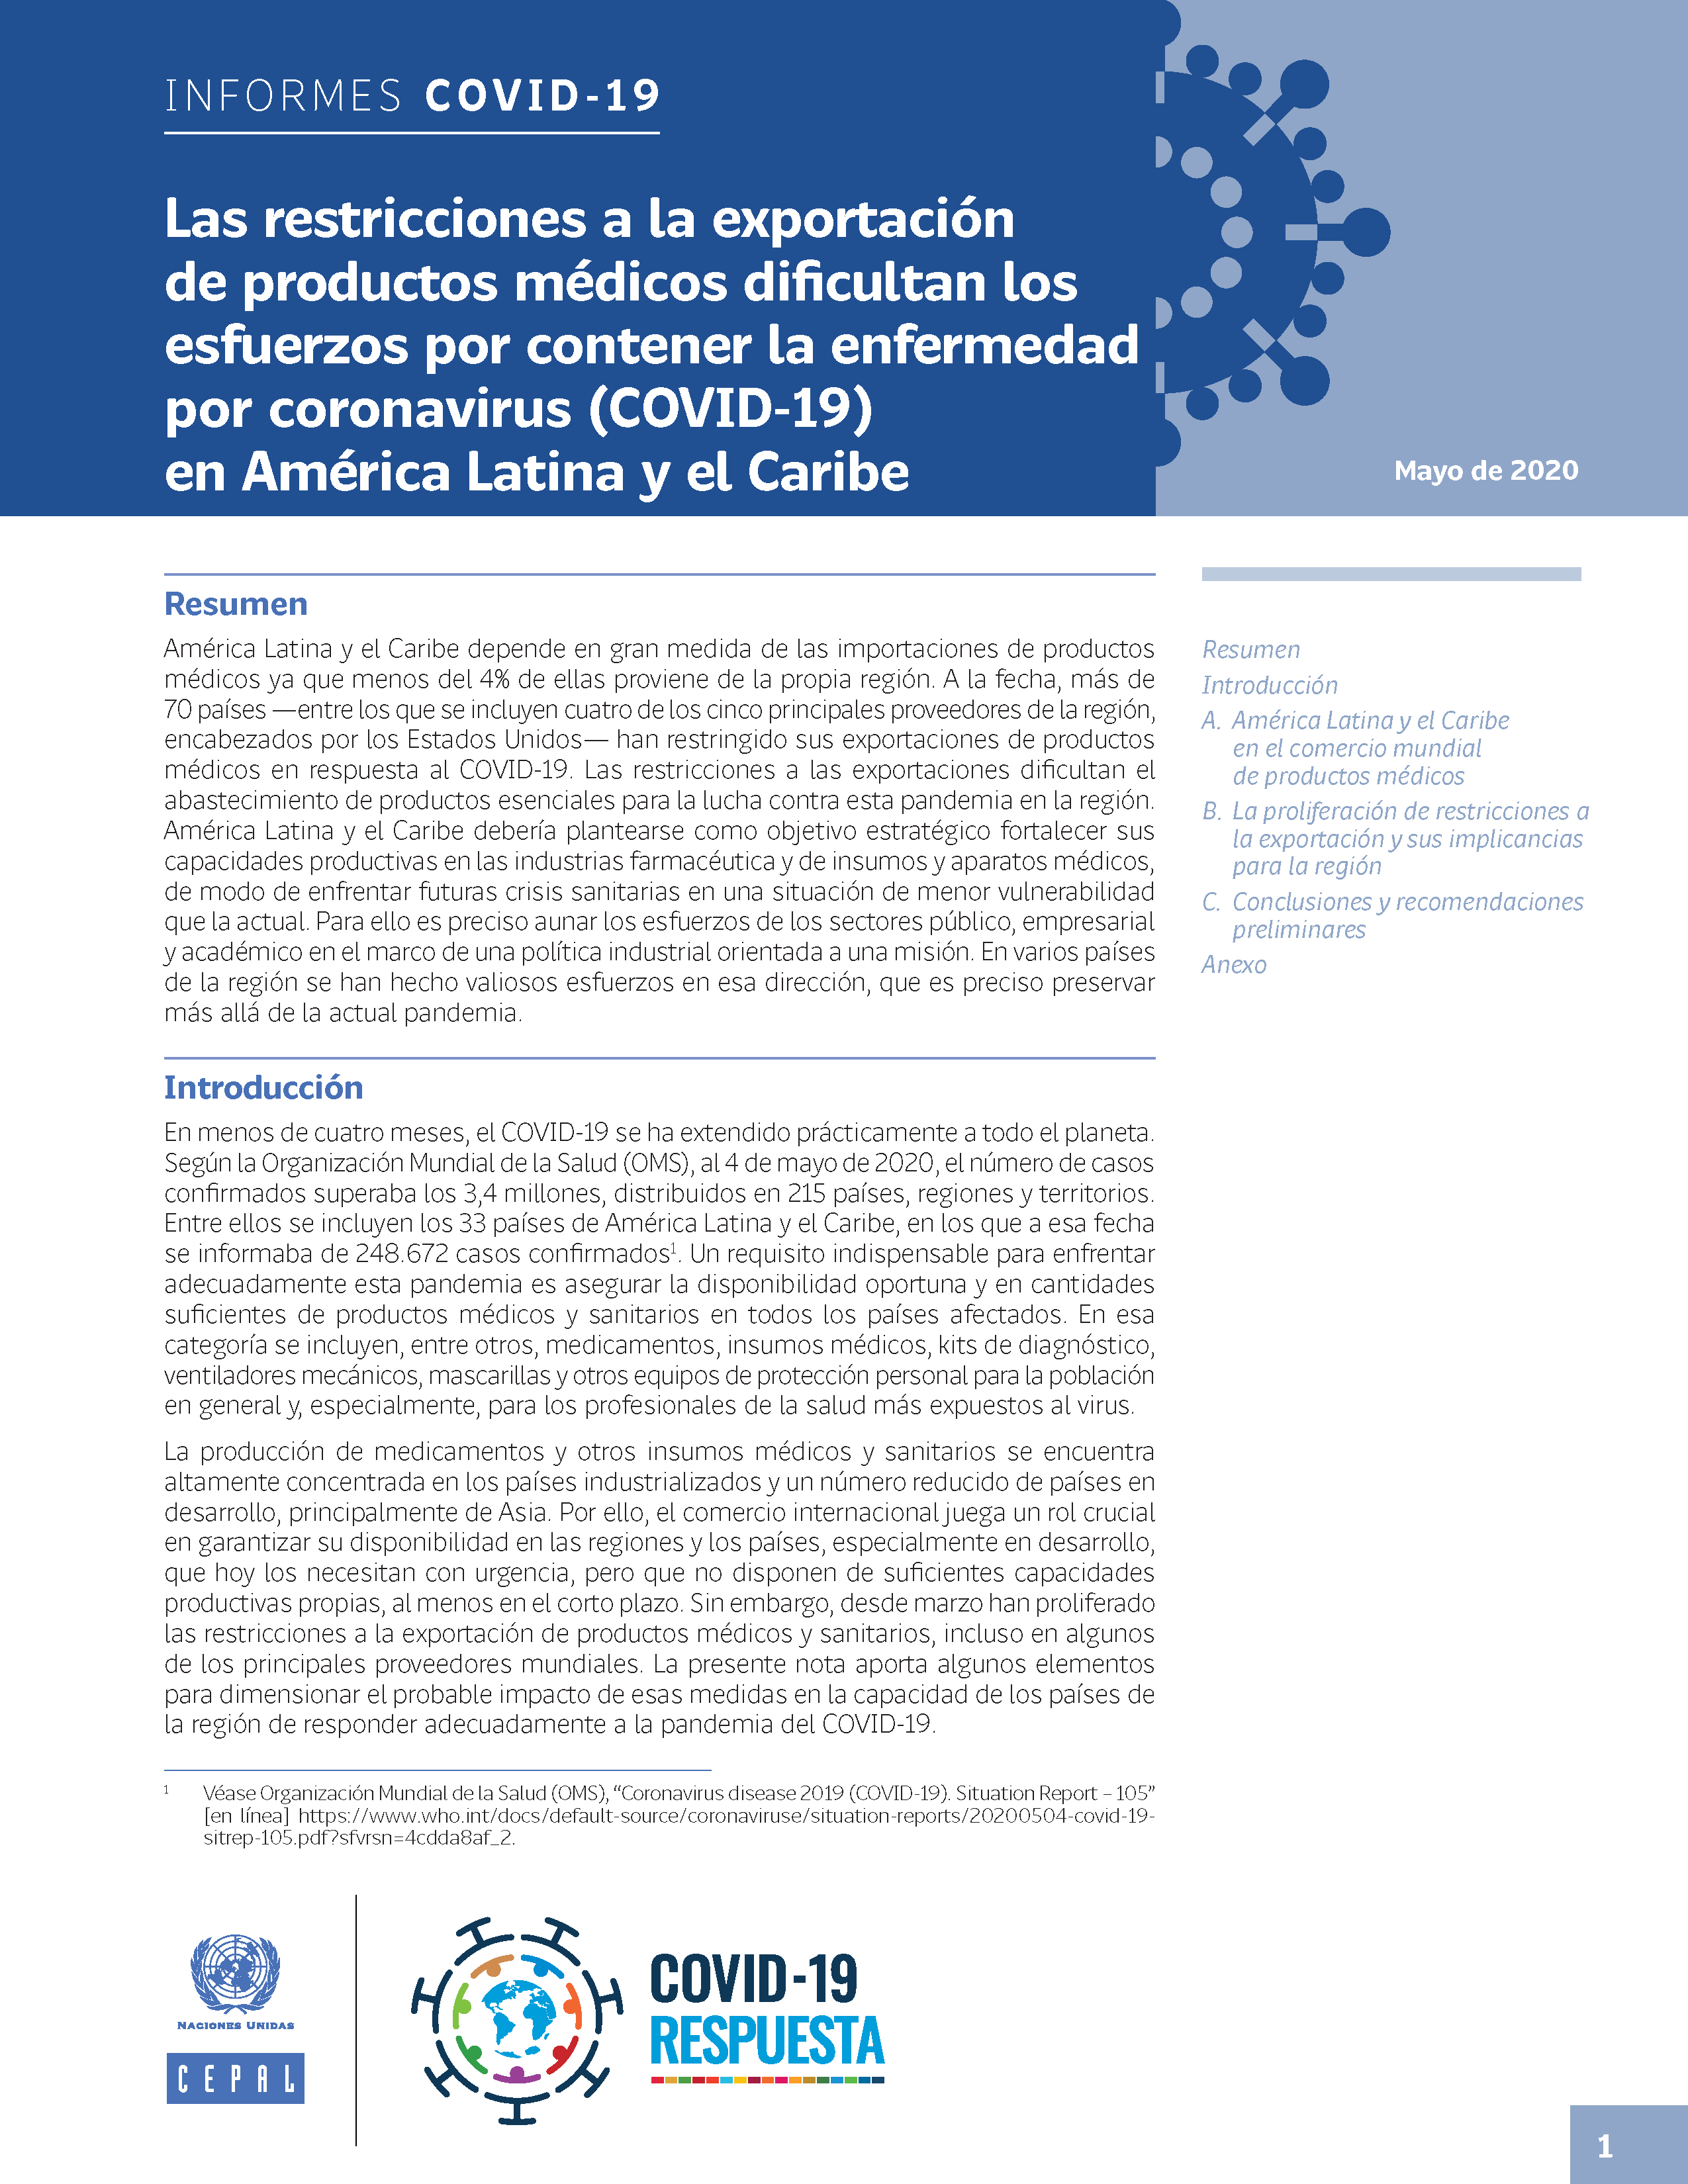 image of Las restricciones a la exportación de productos médicos dificultan los esfuerzos por contener la enfermedad por coronavirus (COVID-19) en América Latina y el Caribe